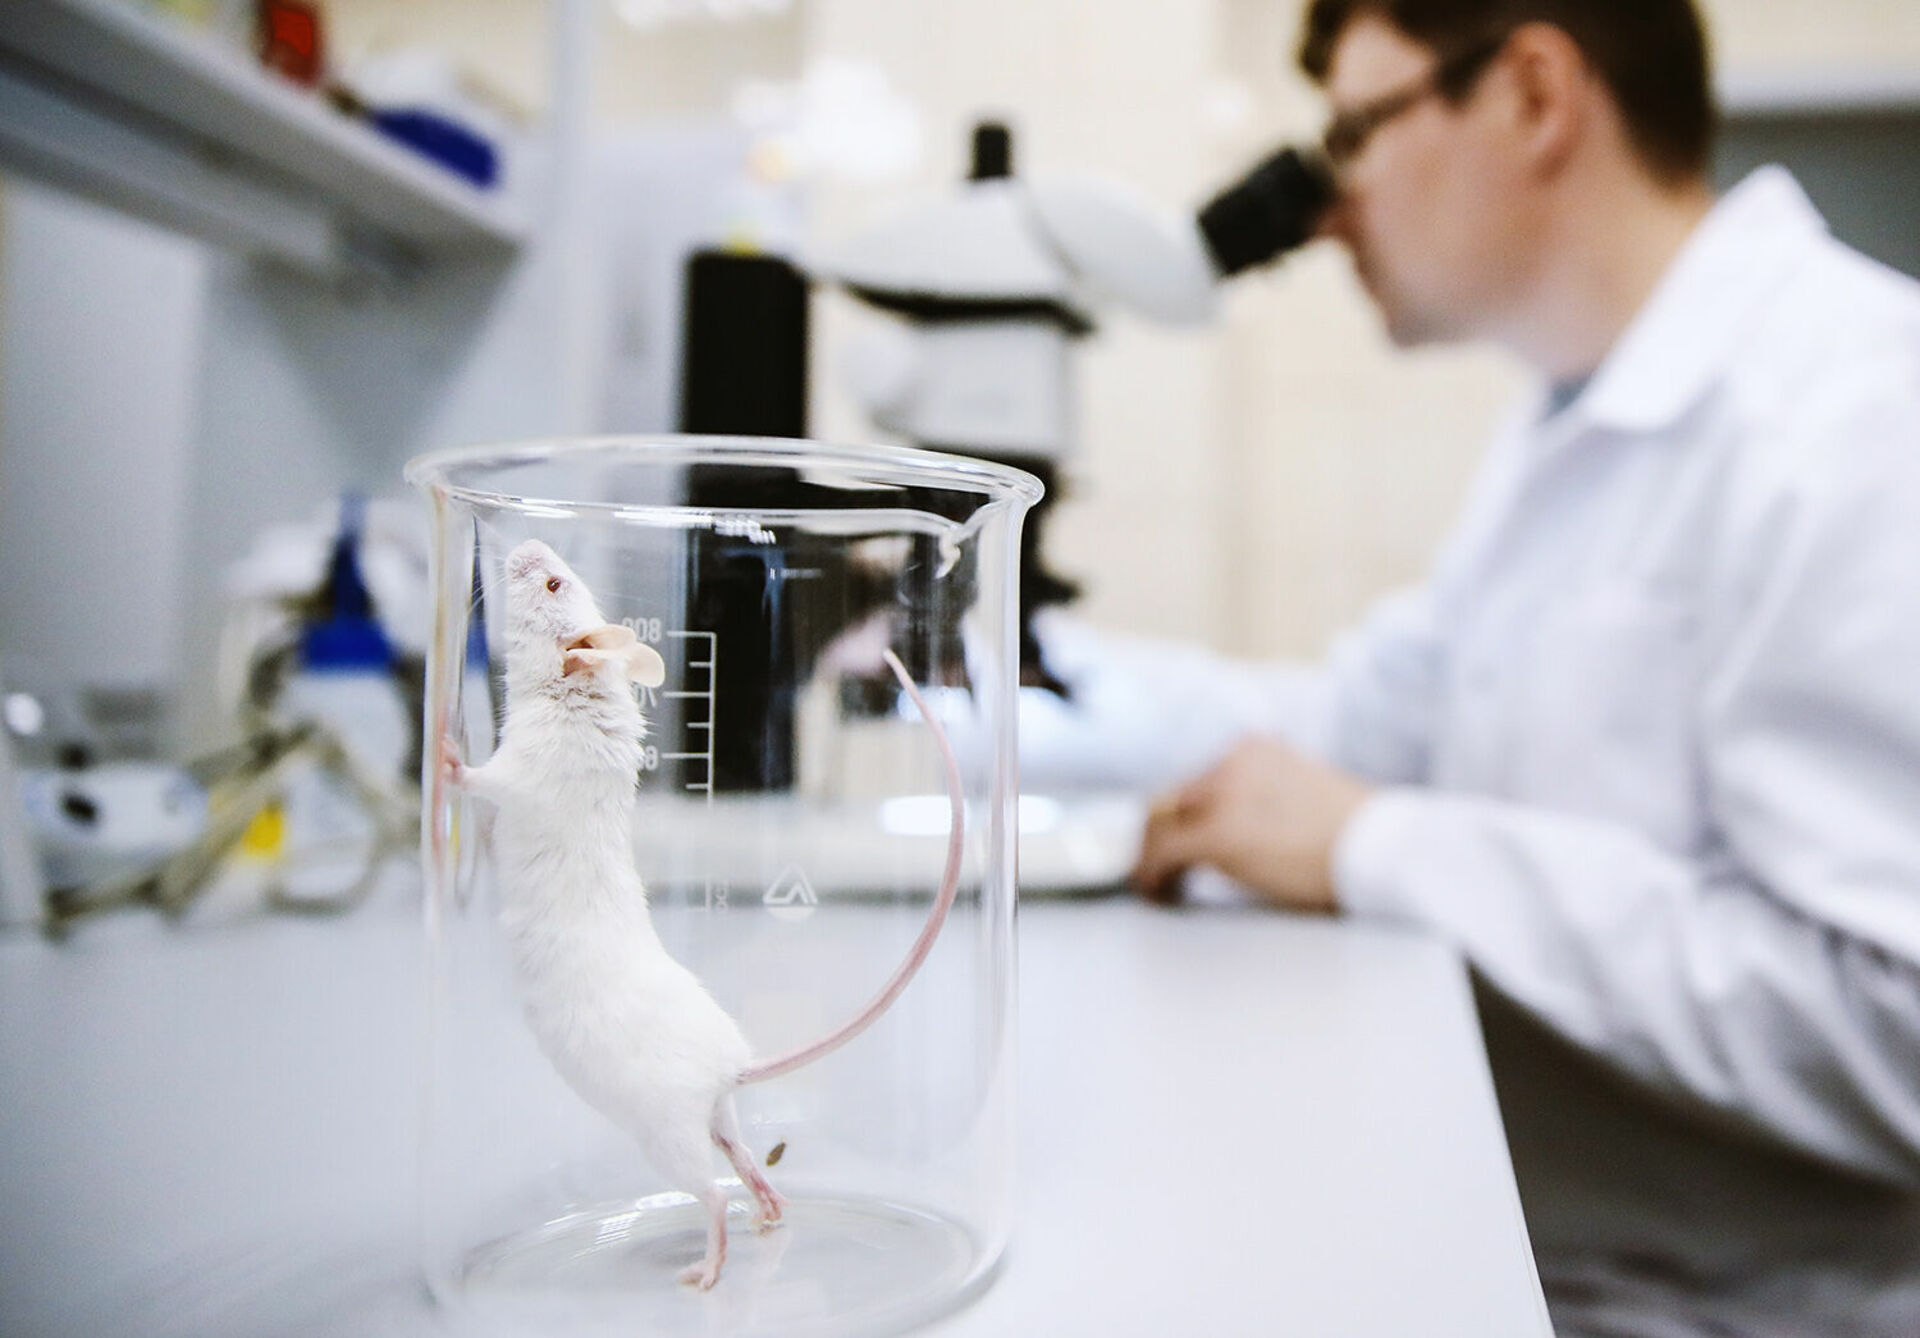 Animal lab. Исследования на животных. Лабораторные мыши. Опыты на мышах. Лабораторные исследования животных.